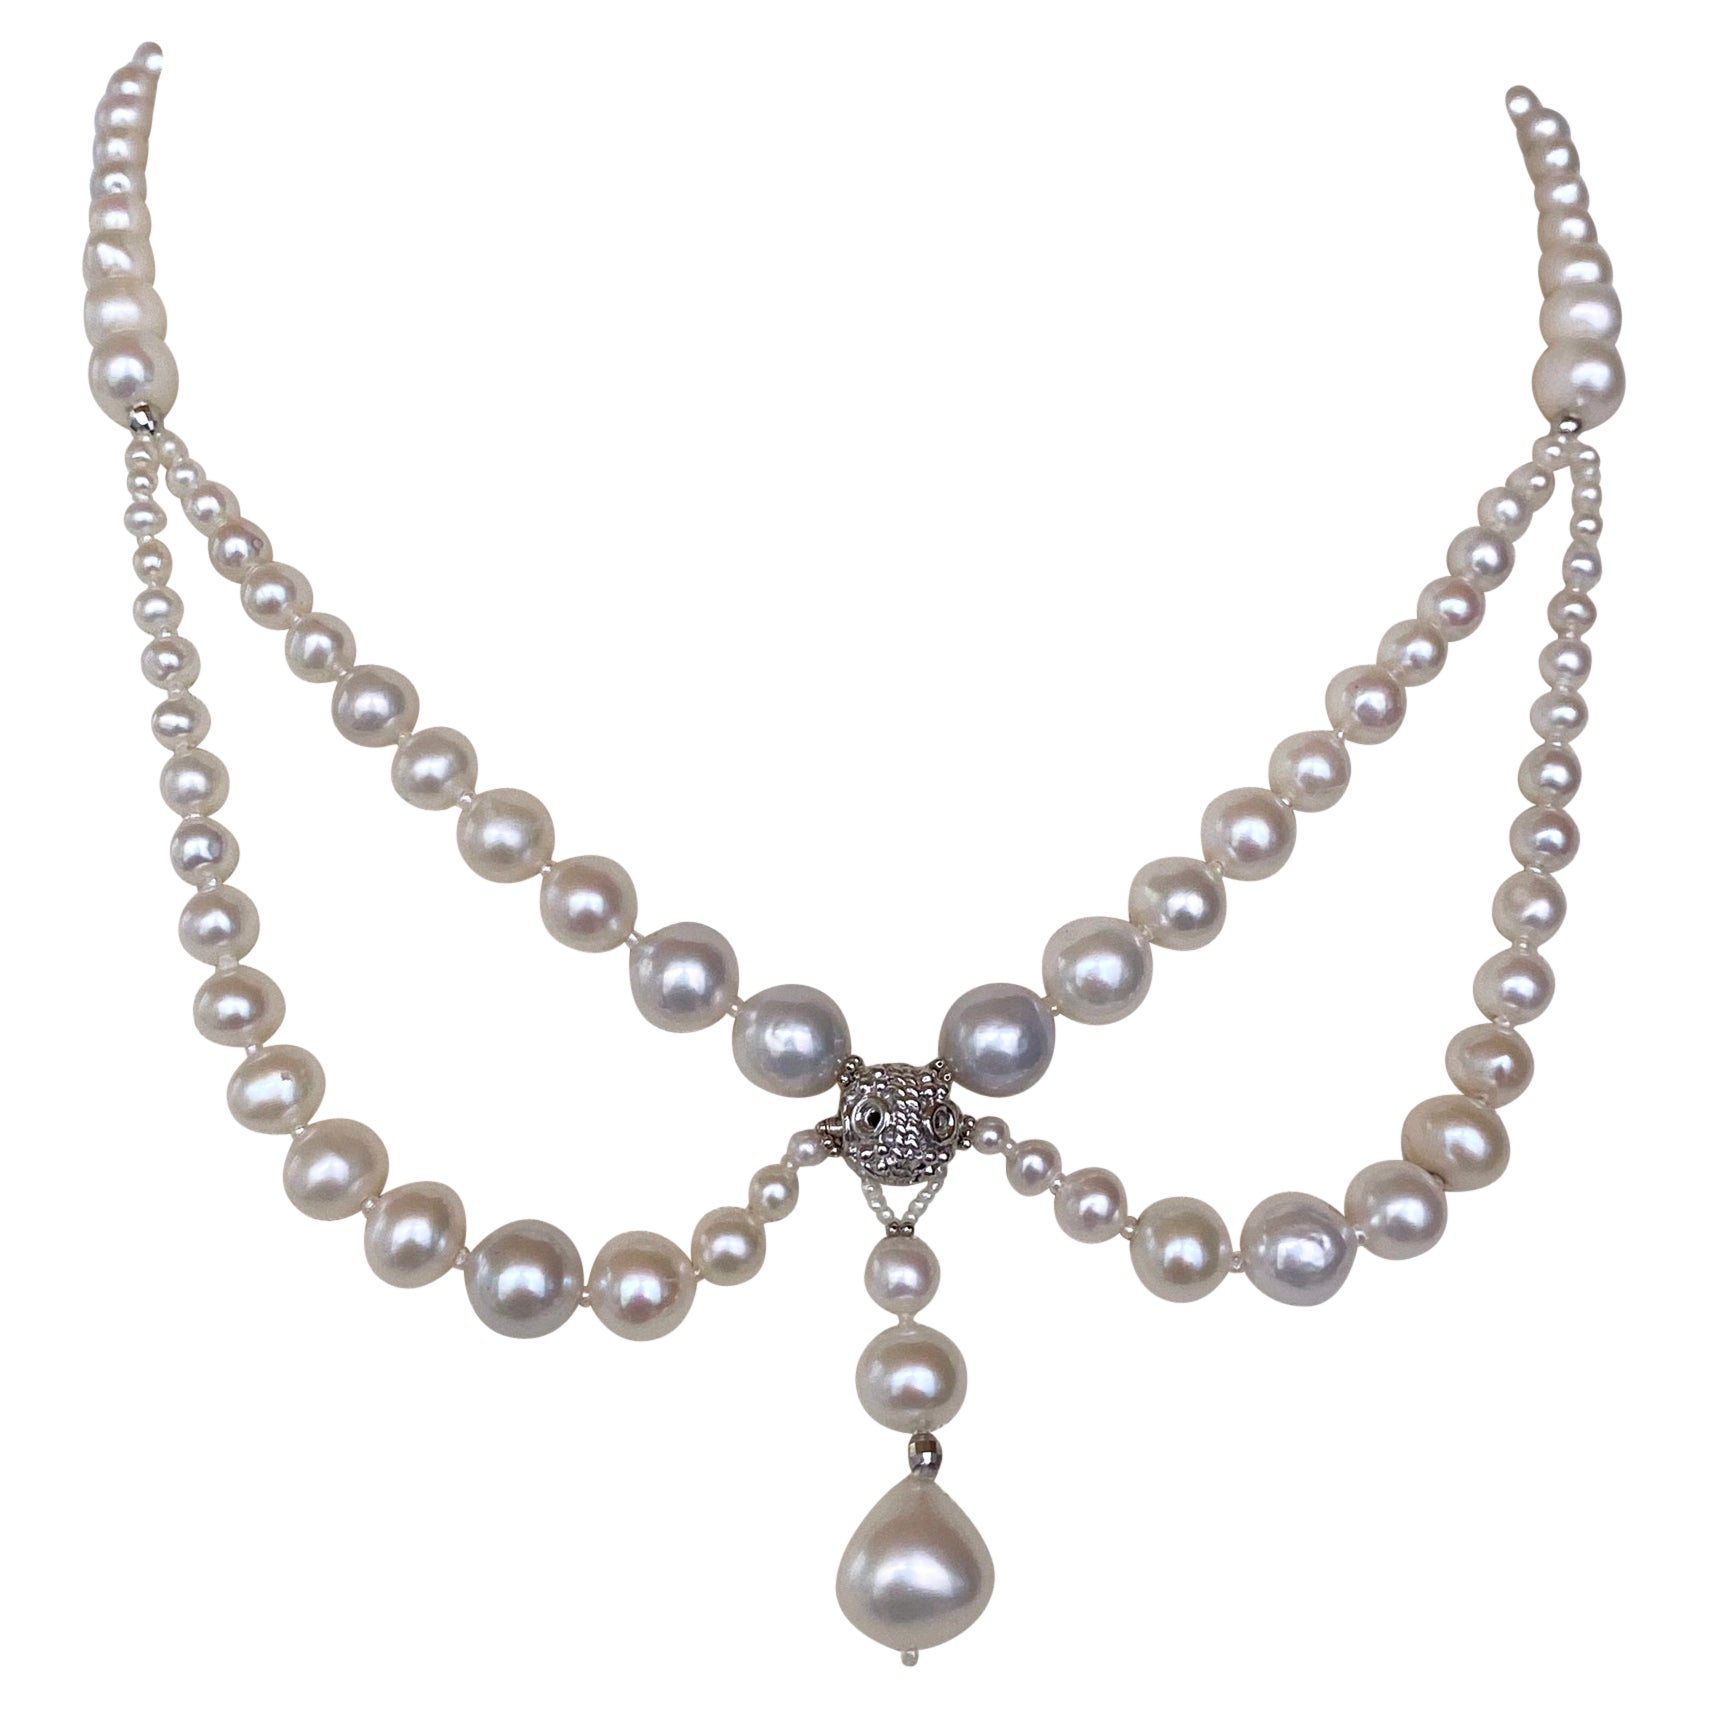 Marina J., viktorianisch inspirierte, drapierte Perlen- und Rhodium-Halskette